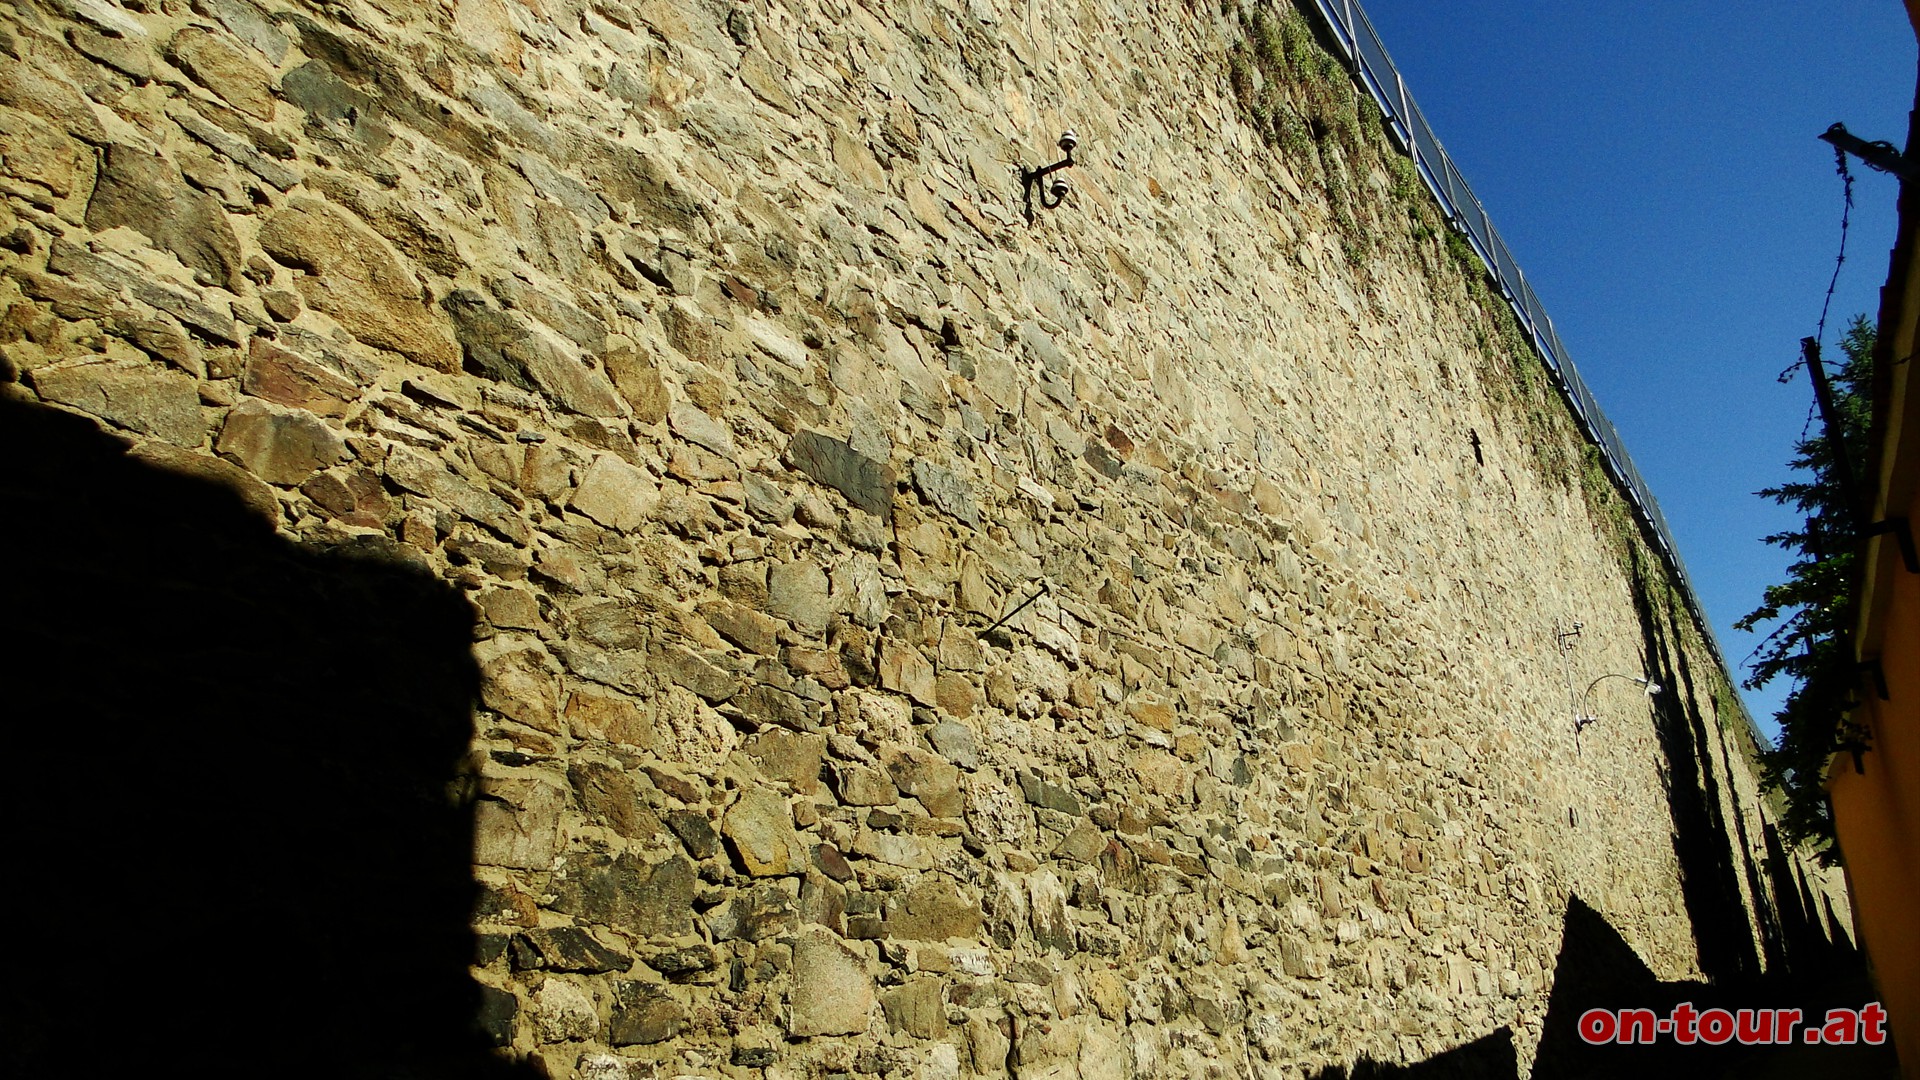 Nun innerhalb der, fast zwei Kilometer langen Wehranlage, entlang. Die Mauer mit dem Zinnenkranz wurde bereits ab dem 14. Jh. errichtet.